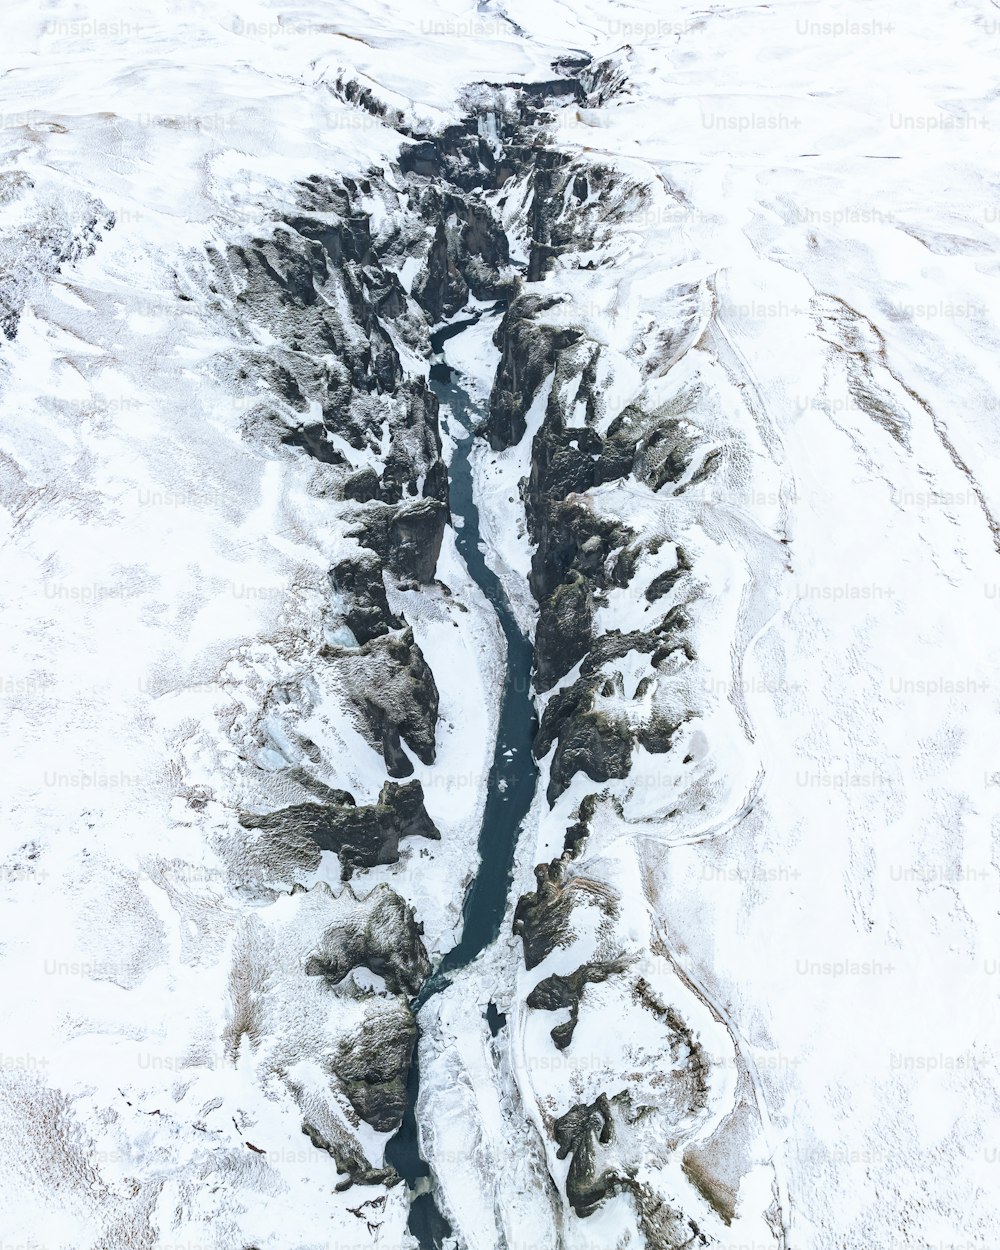 雪景色の中を流れる川の空撮